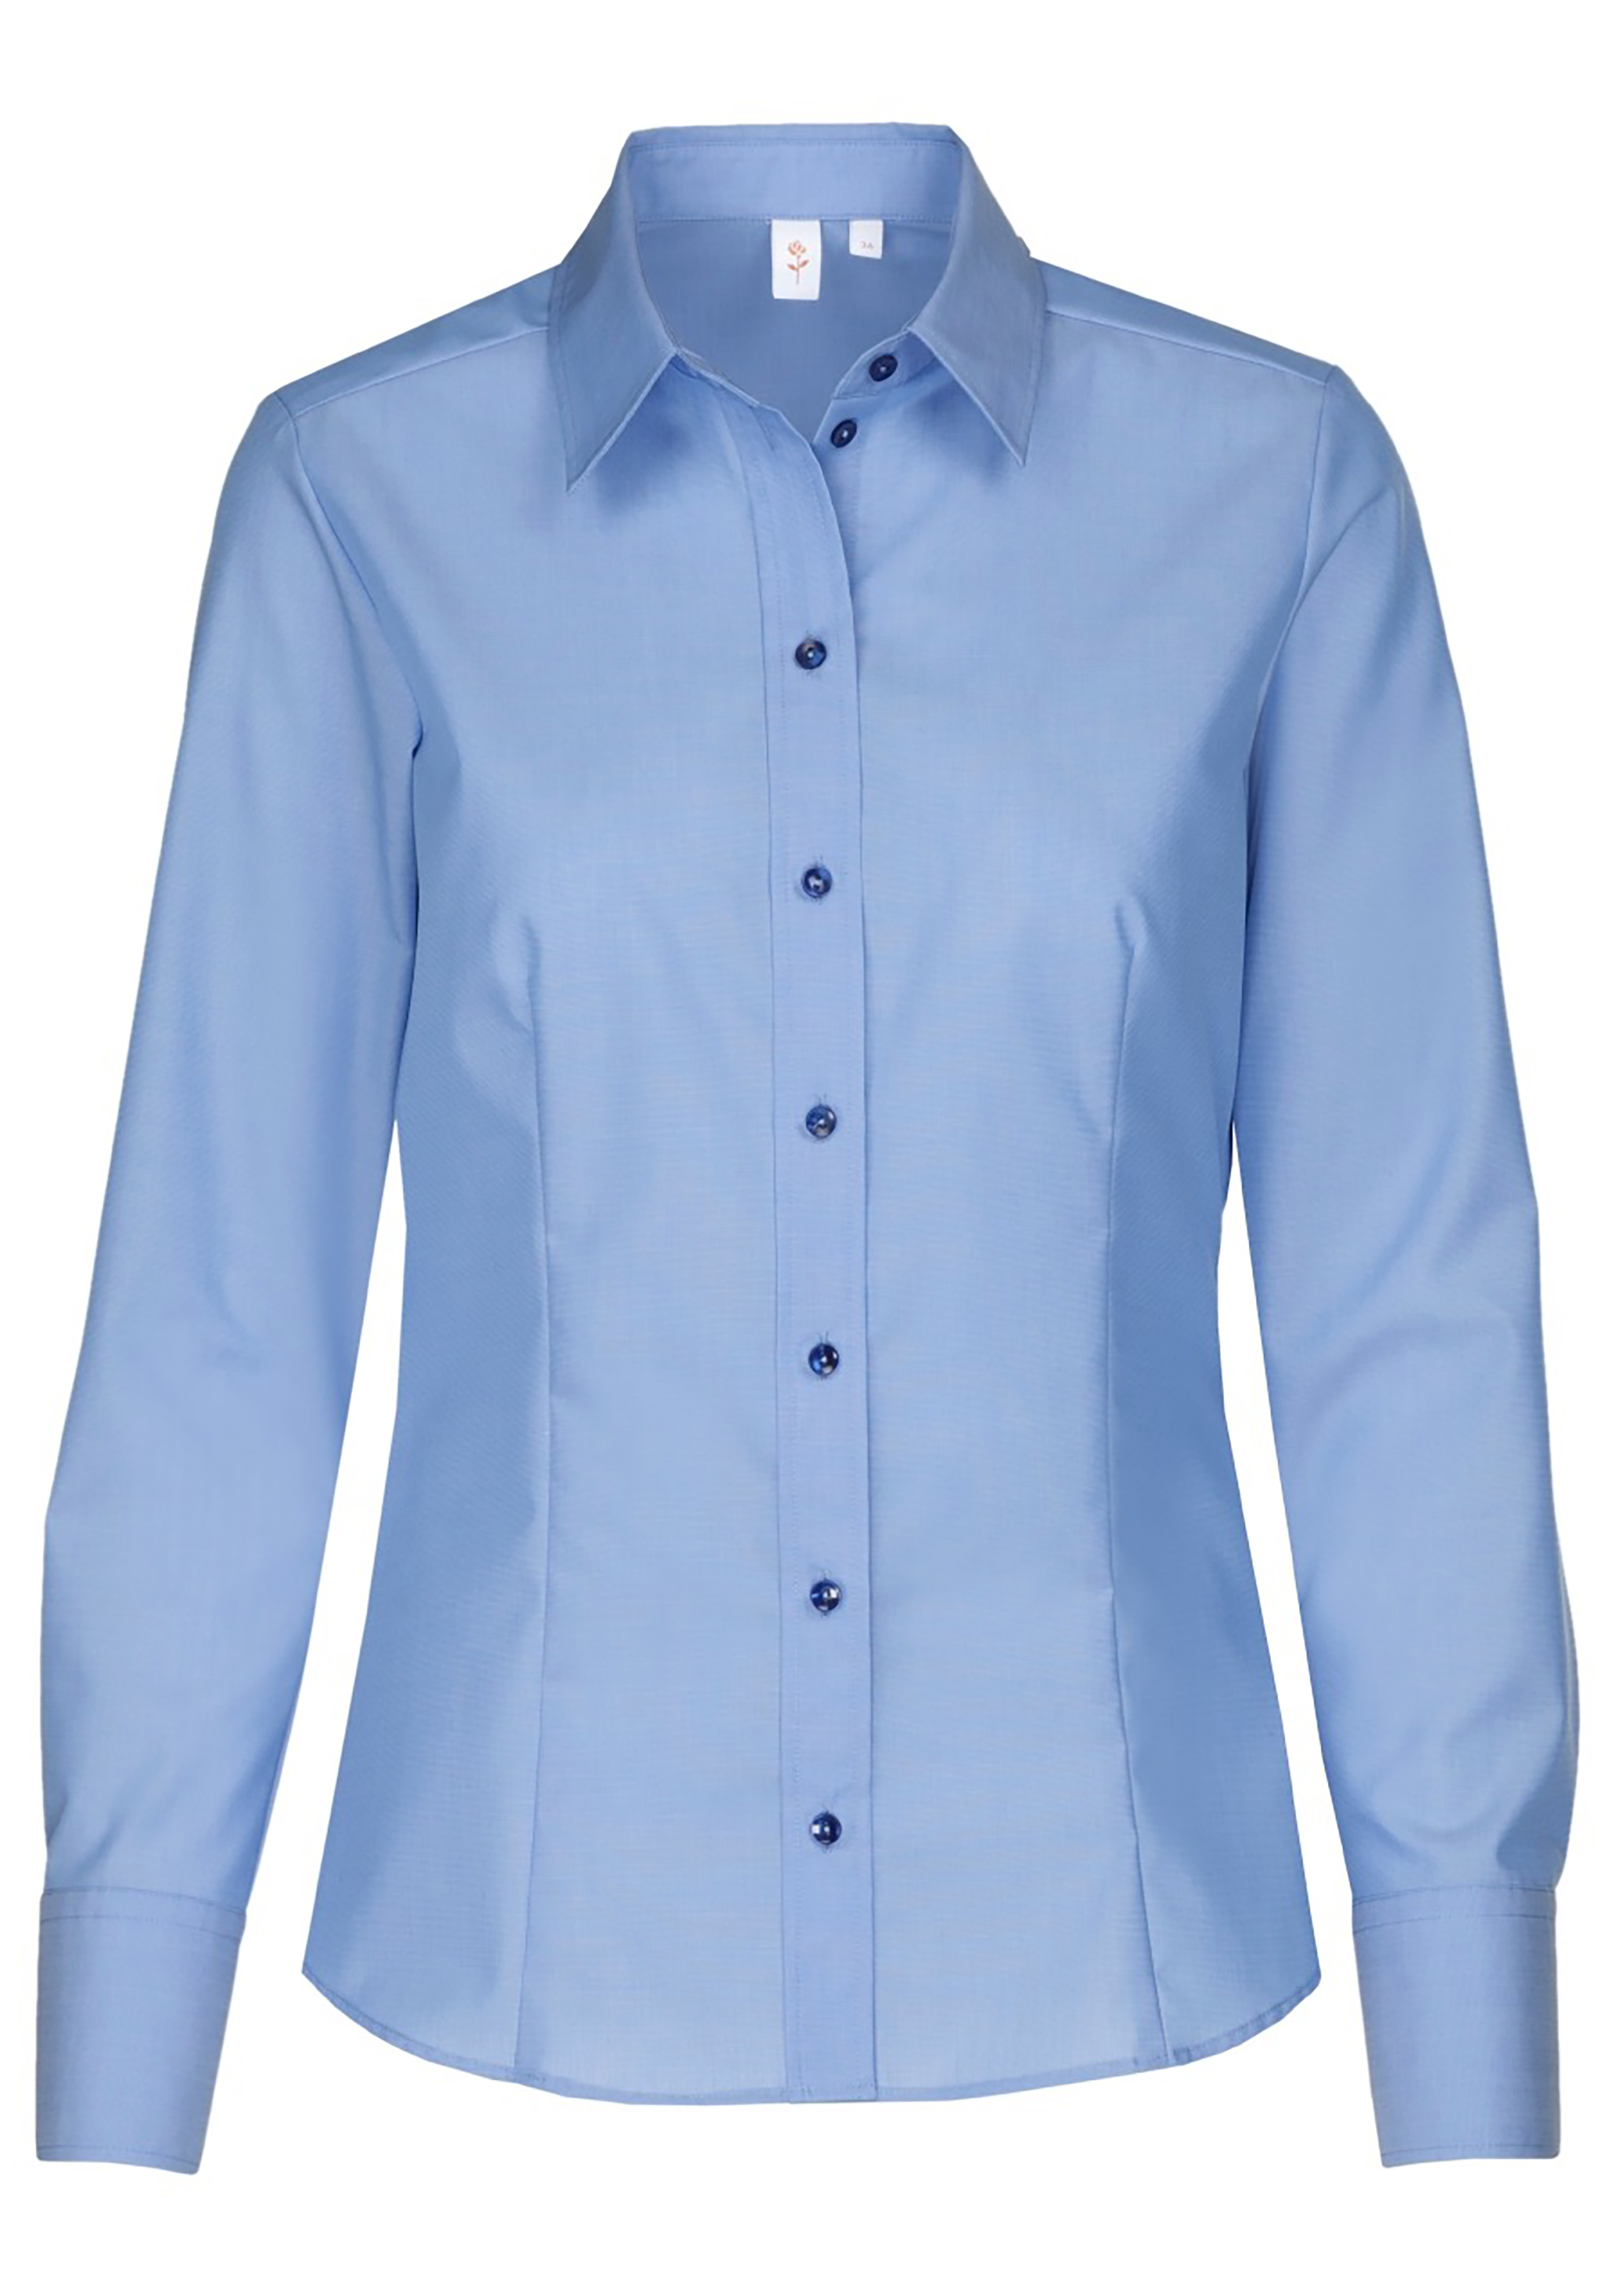 Whirlpool frequentie solide Seidensticker dames blouse regular fit, blauw - Shop de nieuwste  voorjaarsmode